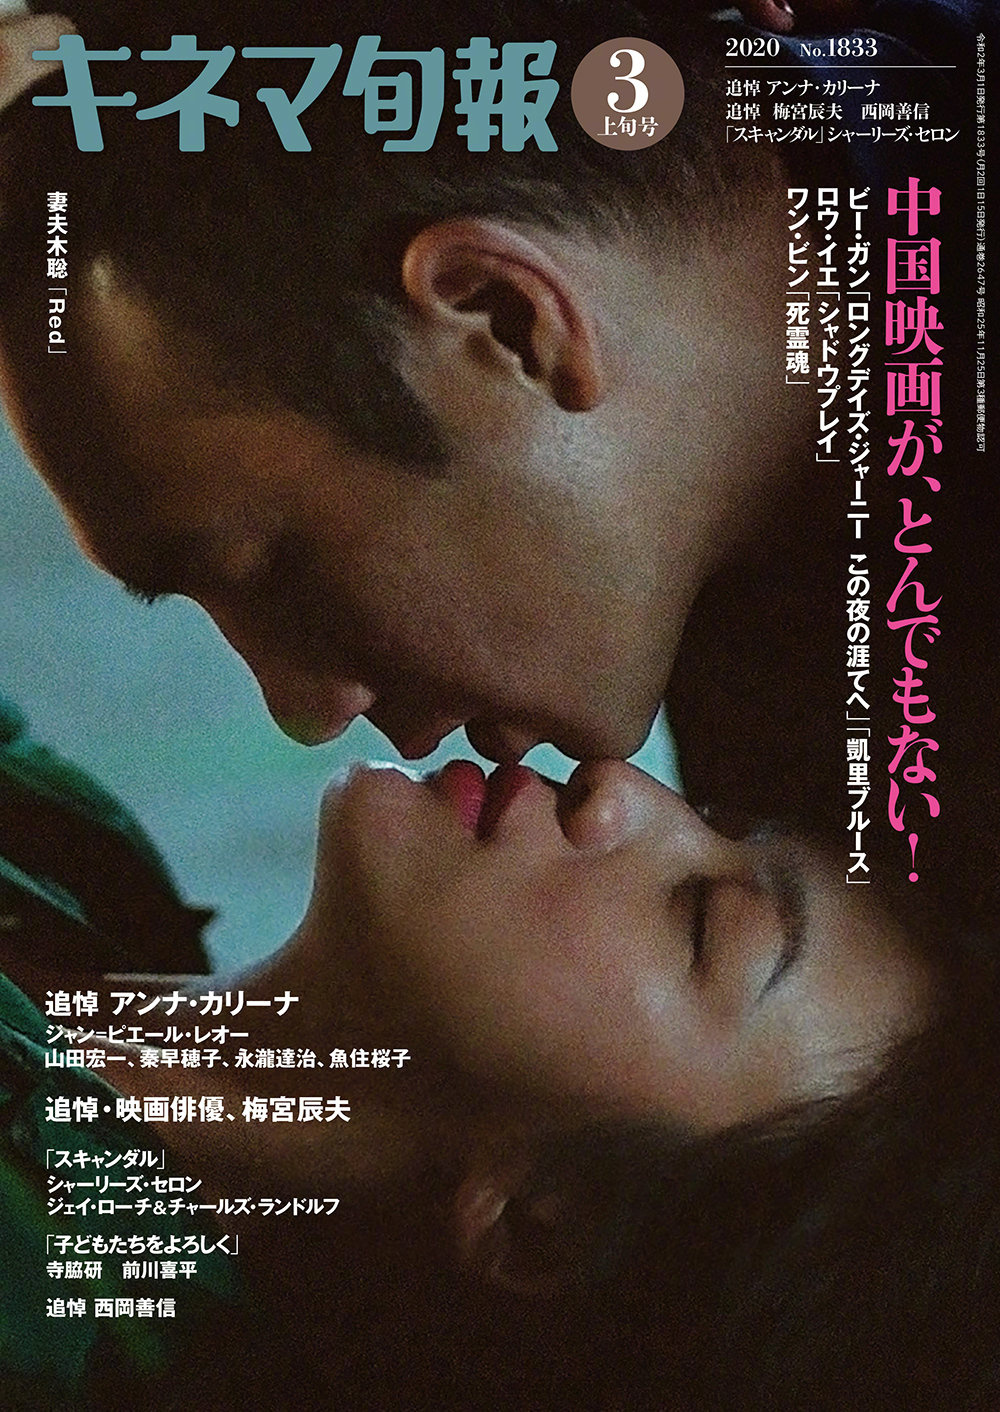 《地球最后的夜晚》登封《电影旬报》 将日本上映